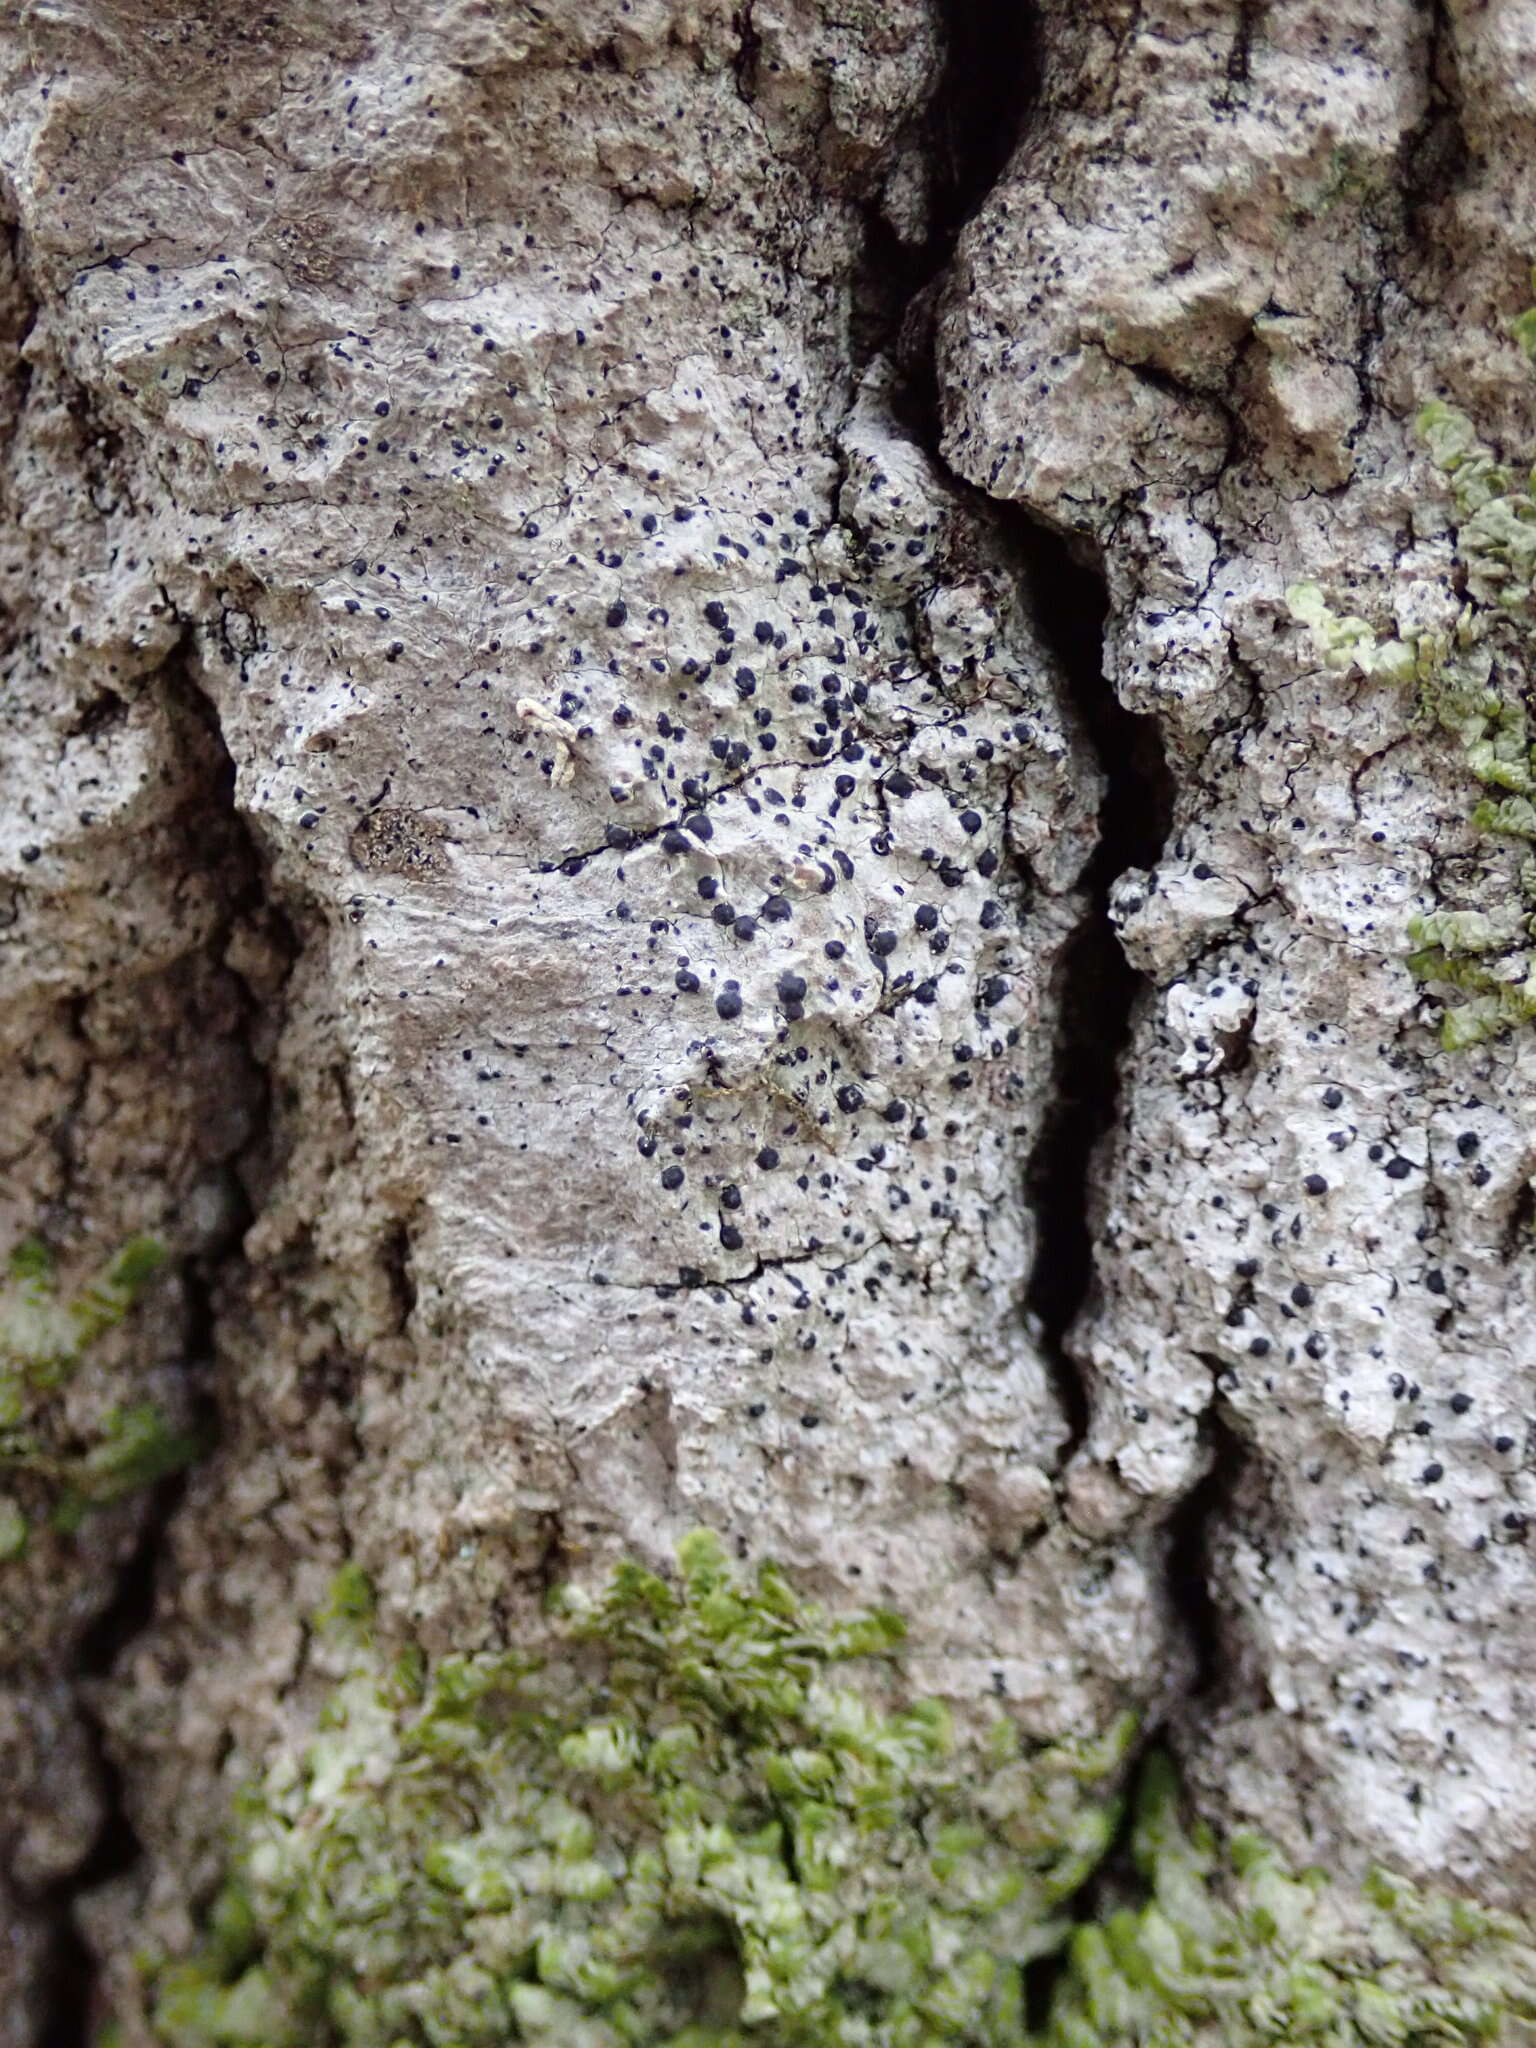 Image of acrocordia lichen